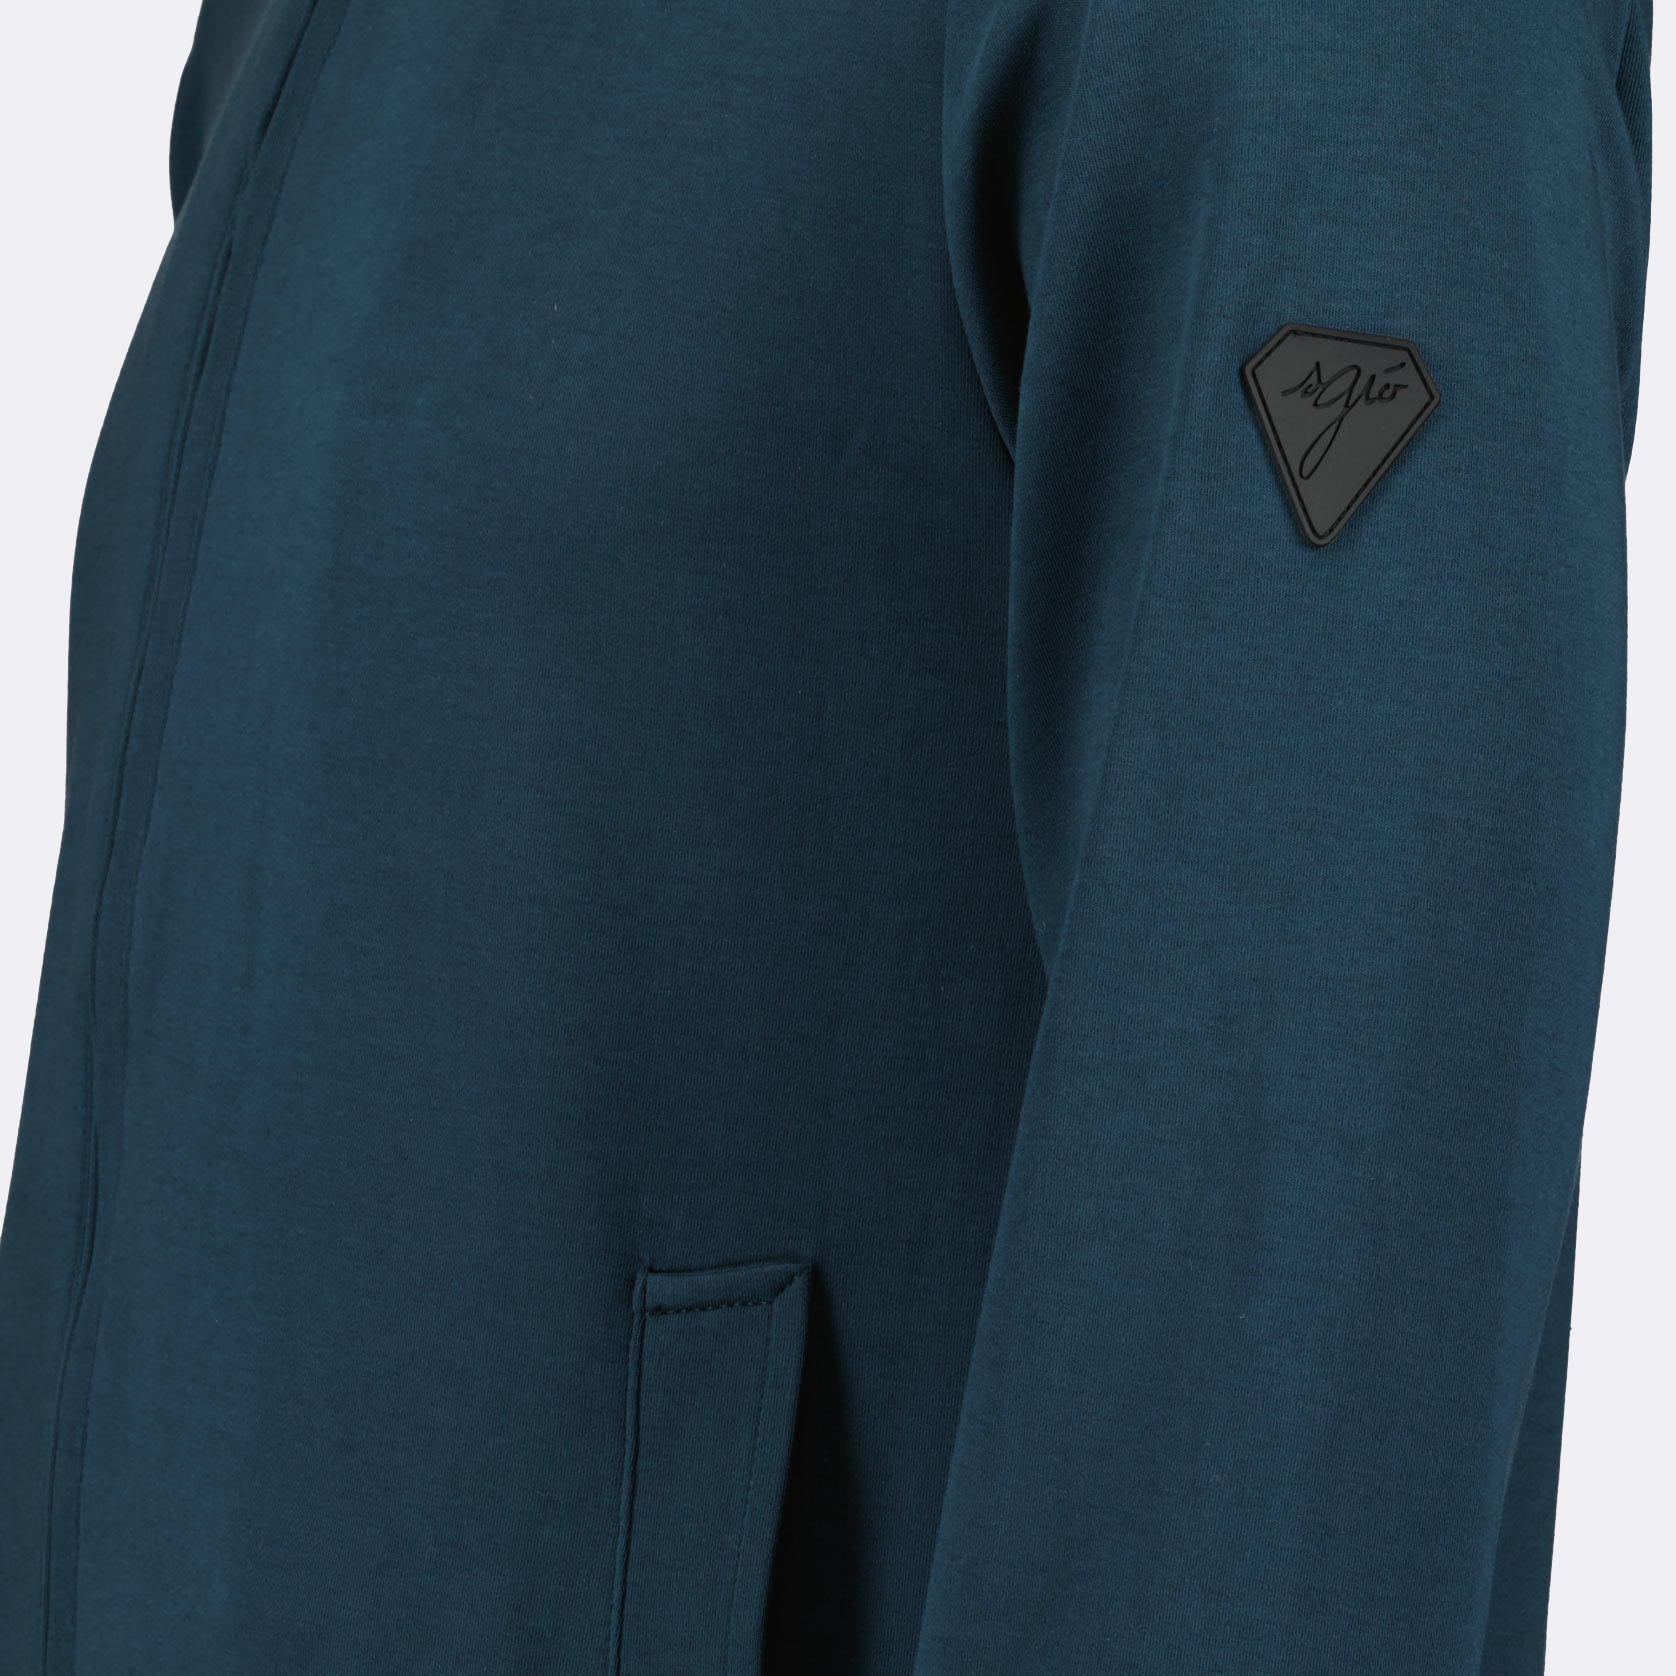 patch veste bleu sport made in France